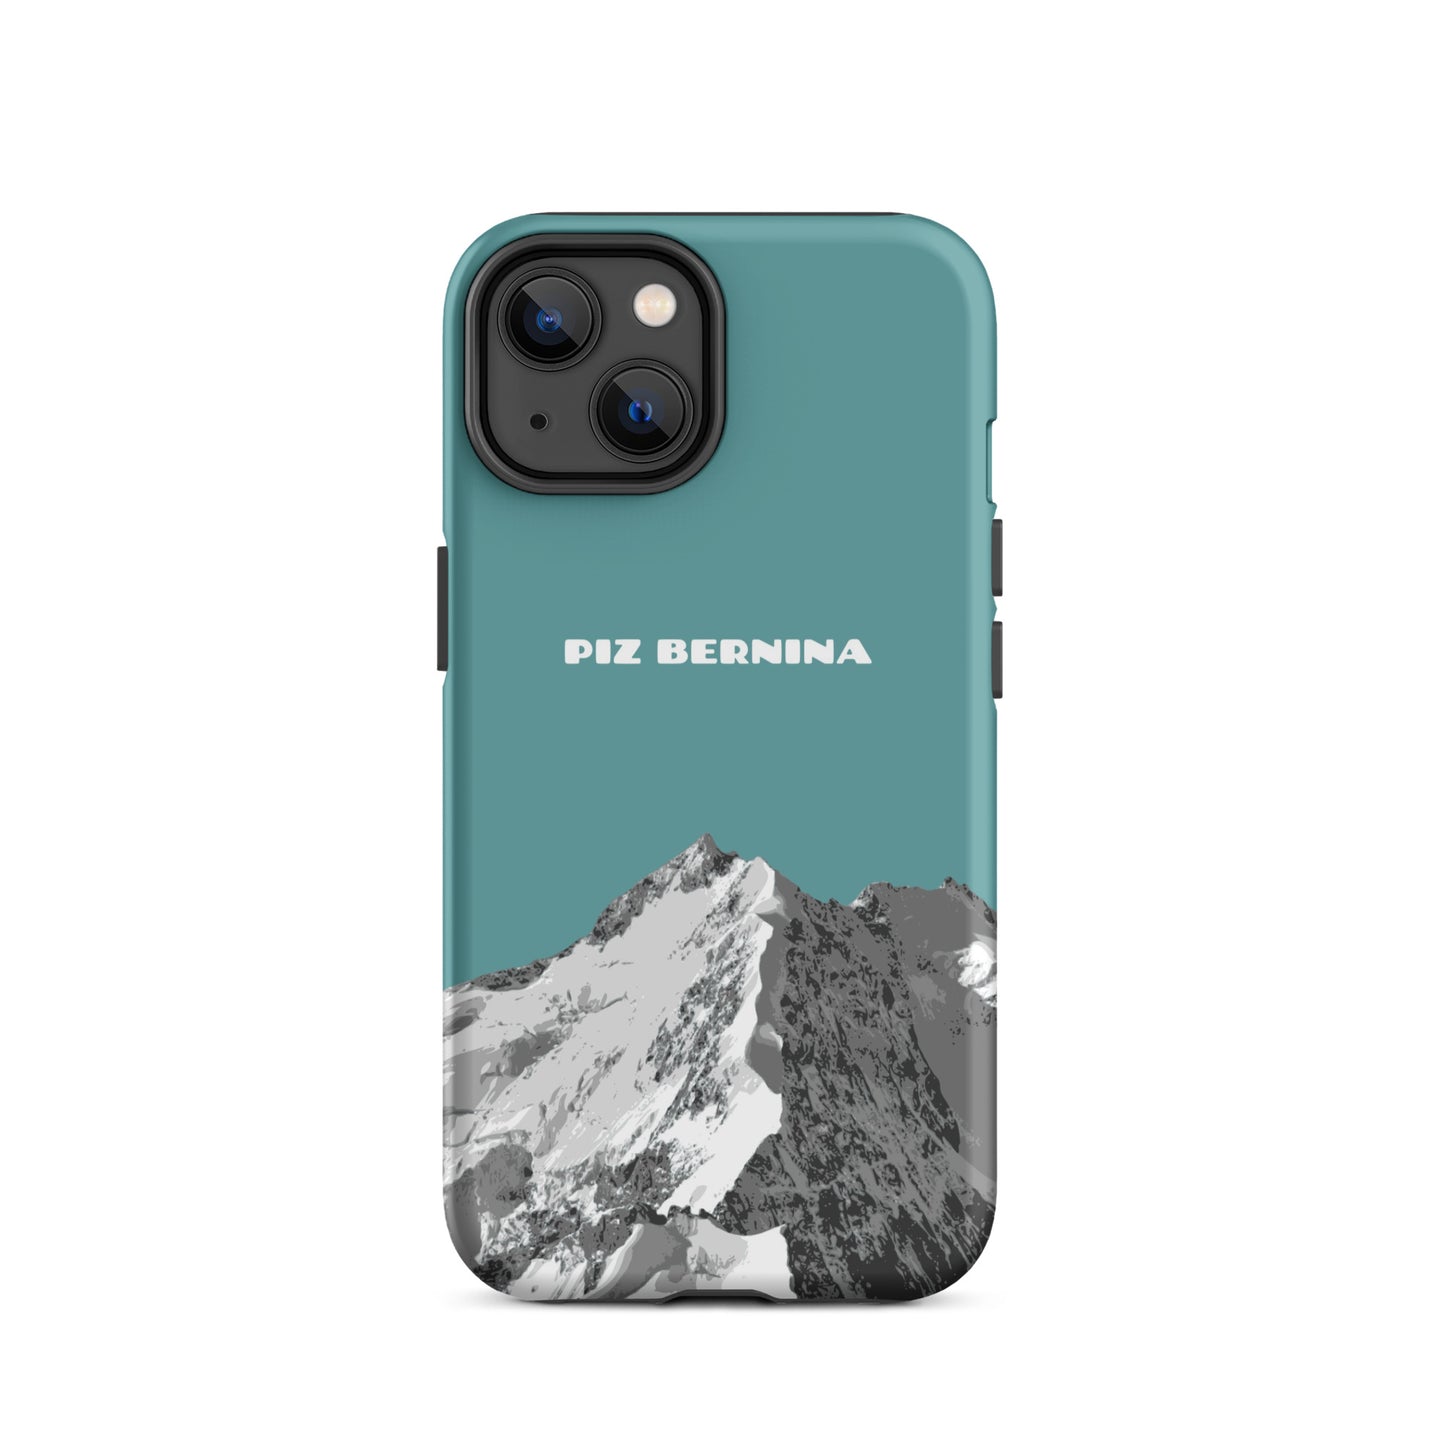 Hülle für das iPhone 10 Pro Max von Apple in der Farbe Kadettenblau, dass den Piz Bernina in Graubünden zeigt.